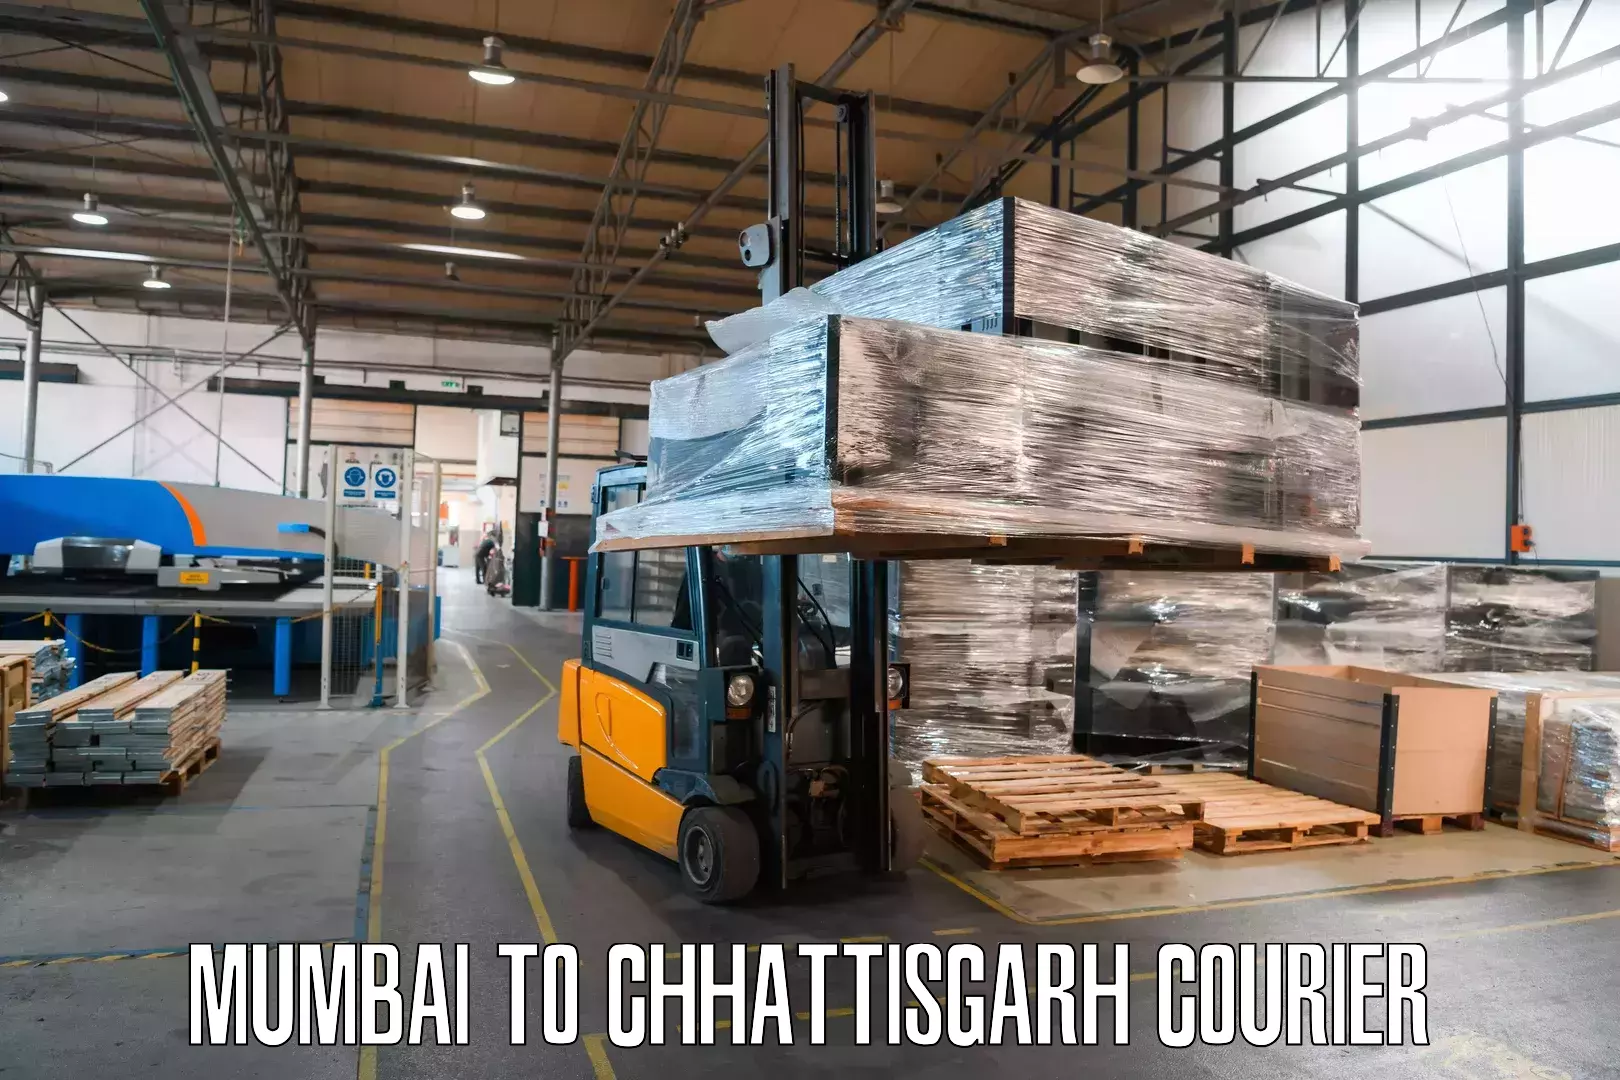 Express mail solutions Mumbai to Chirimiri